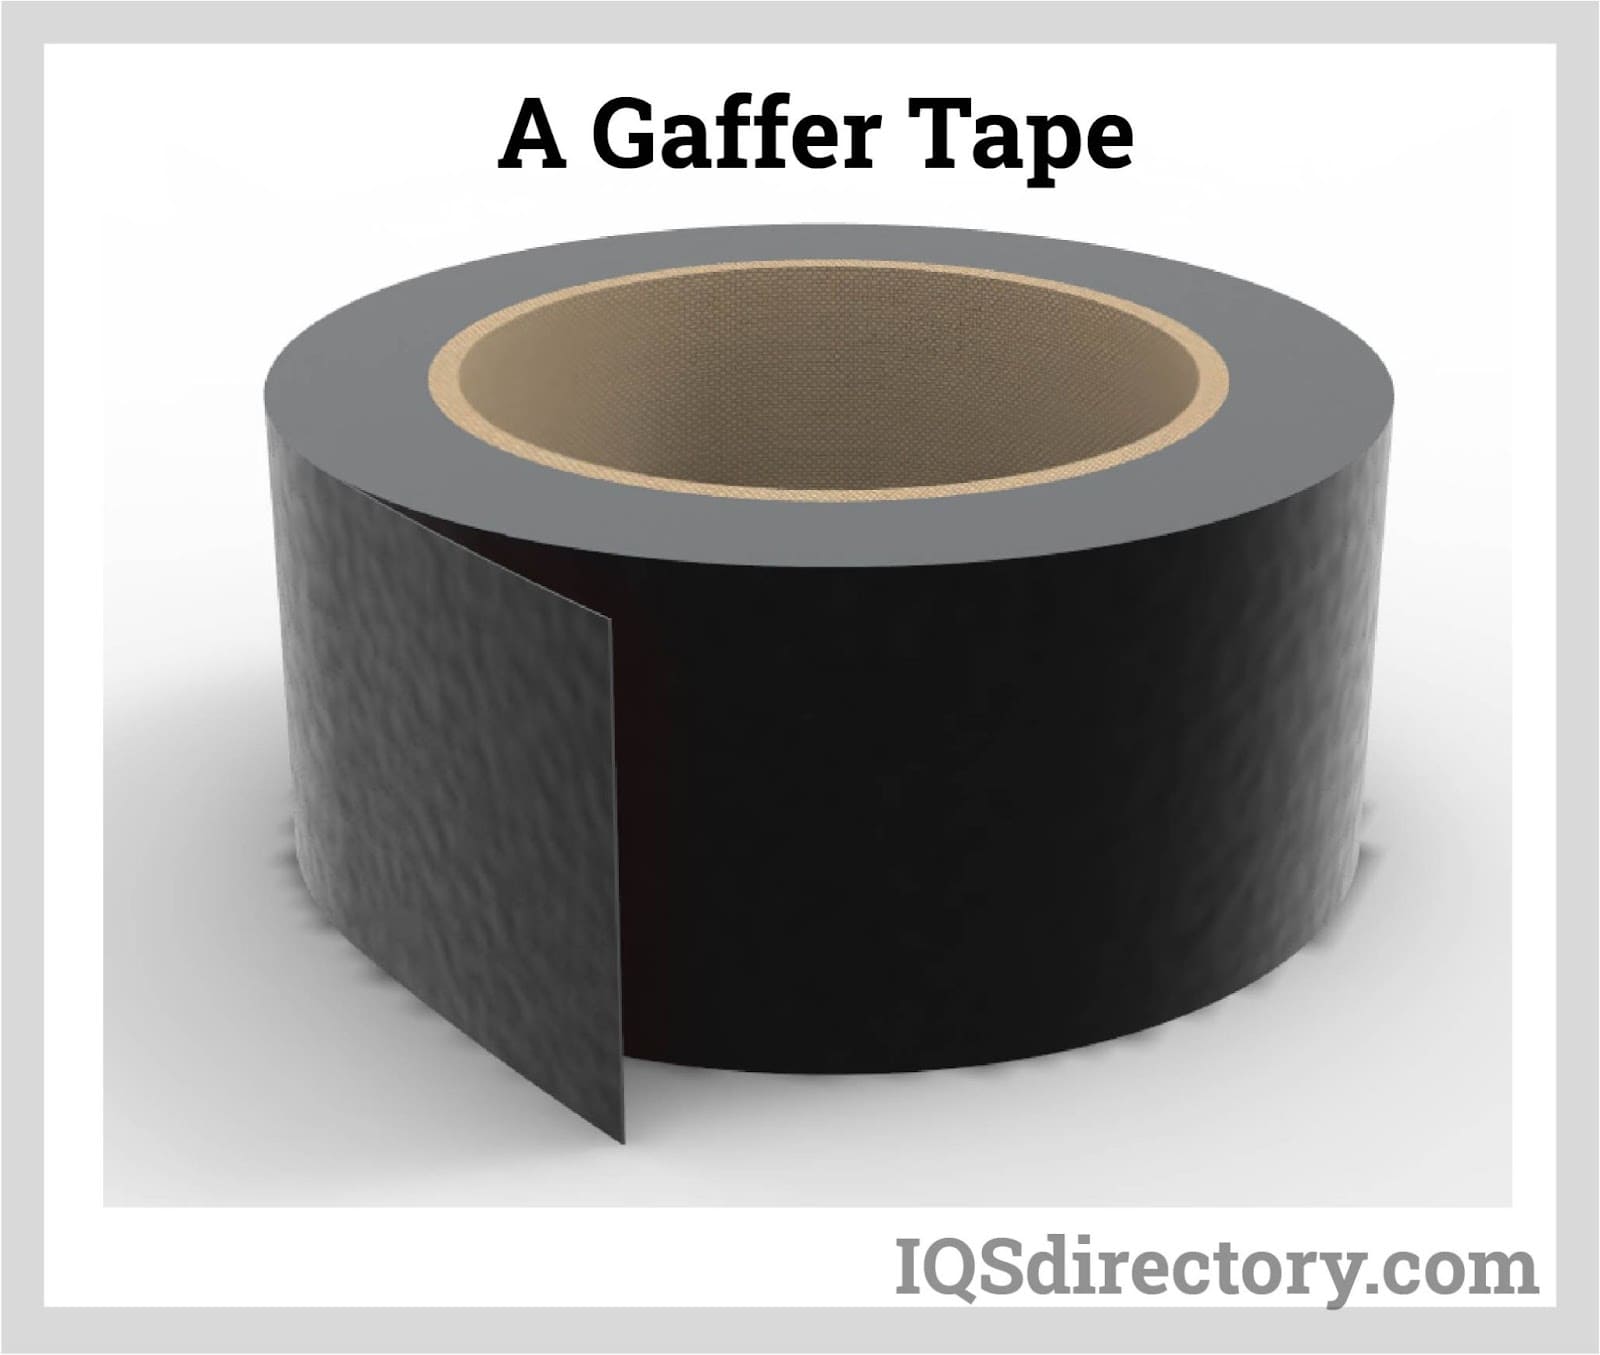 A Gaffer Tape